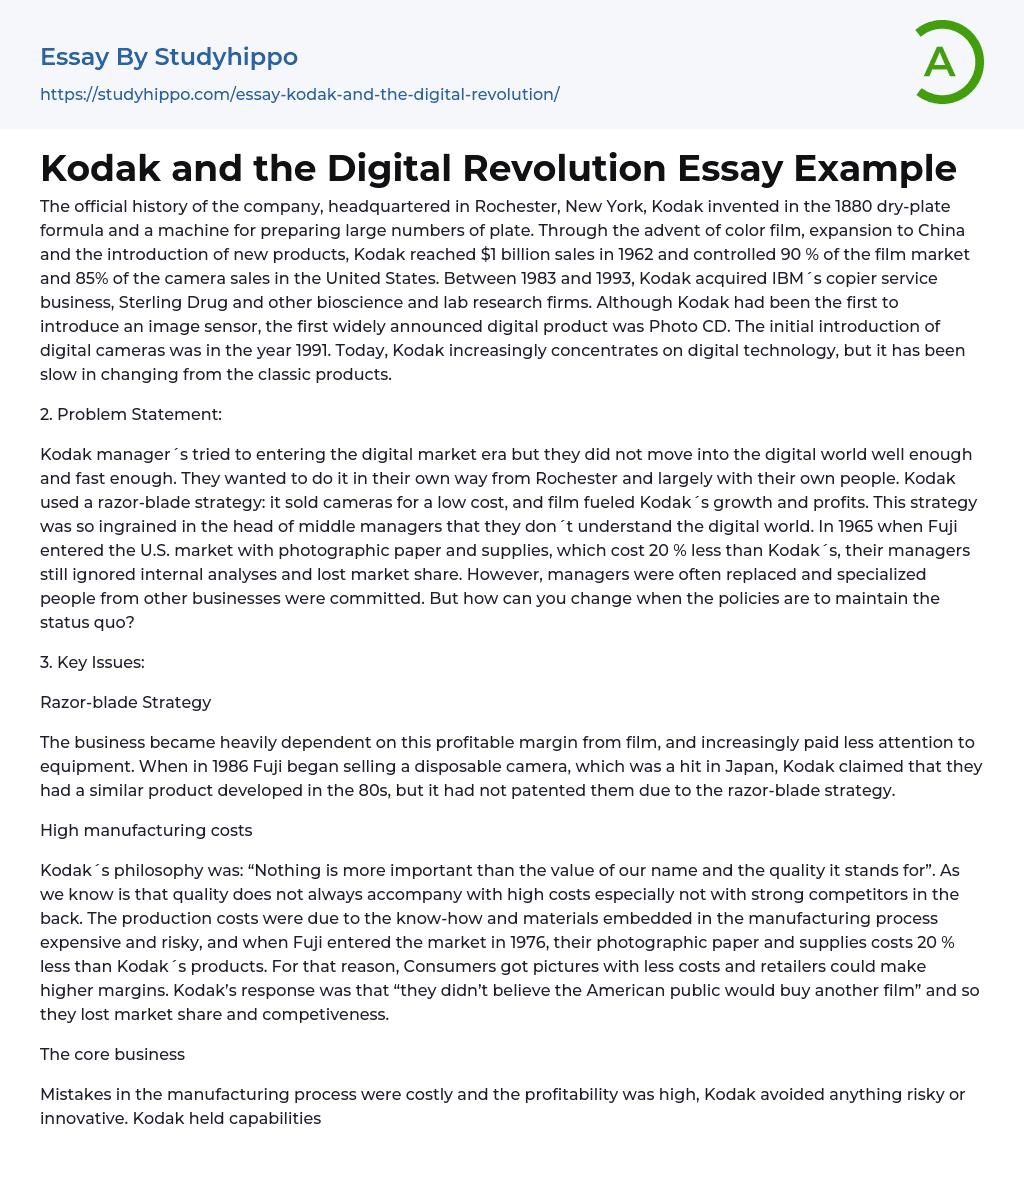 advantages of digital revolution essay